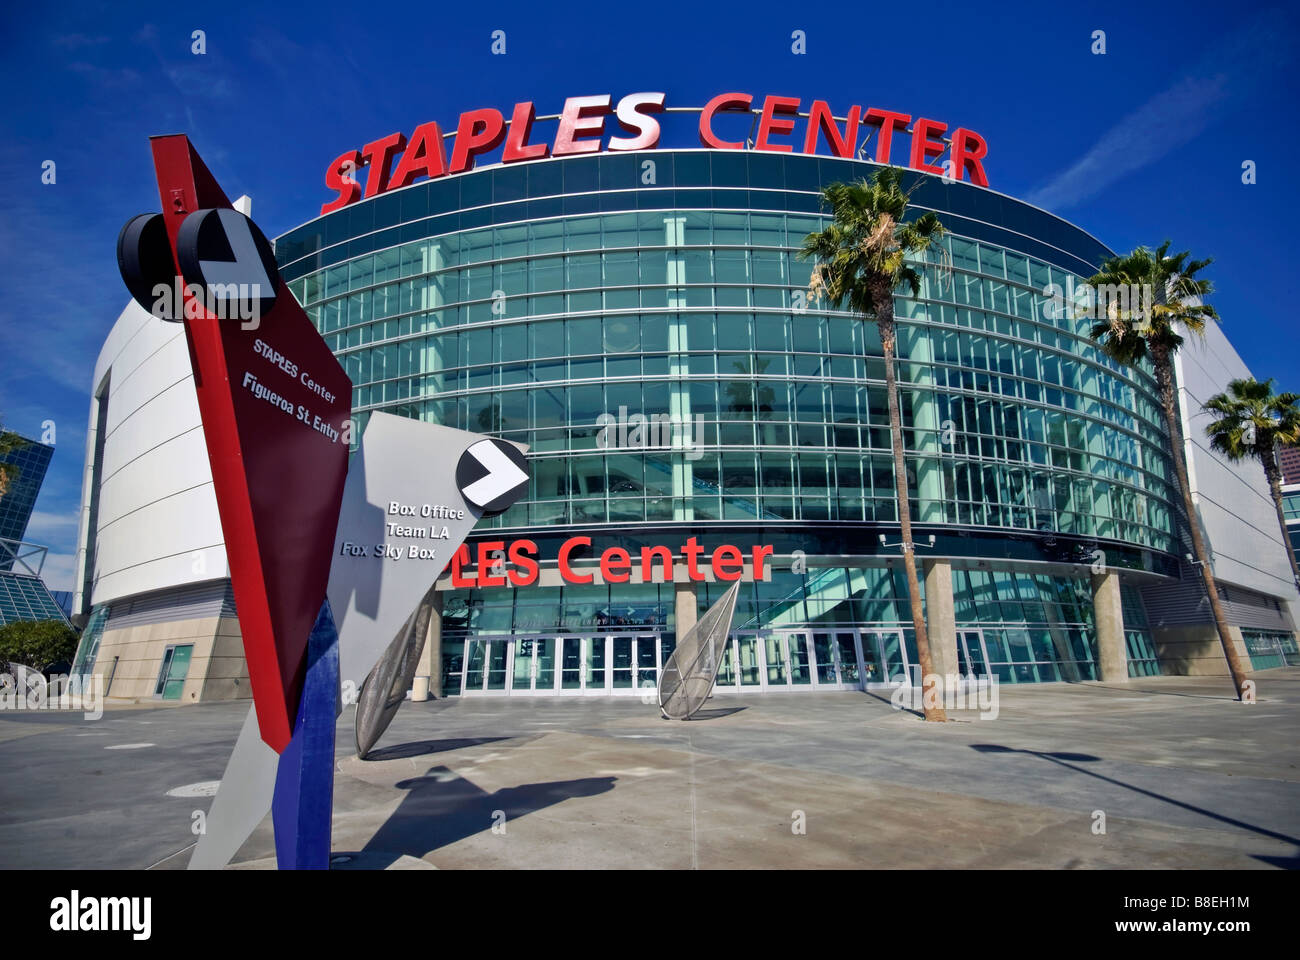 Staples Center Arena deportiva multiuso en el centro de Los Ángeles, California Foto de stock